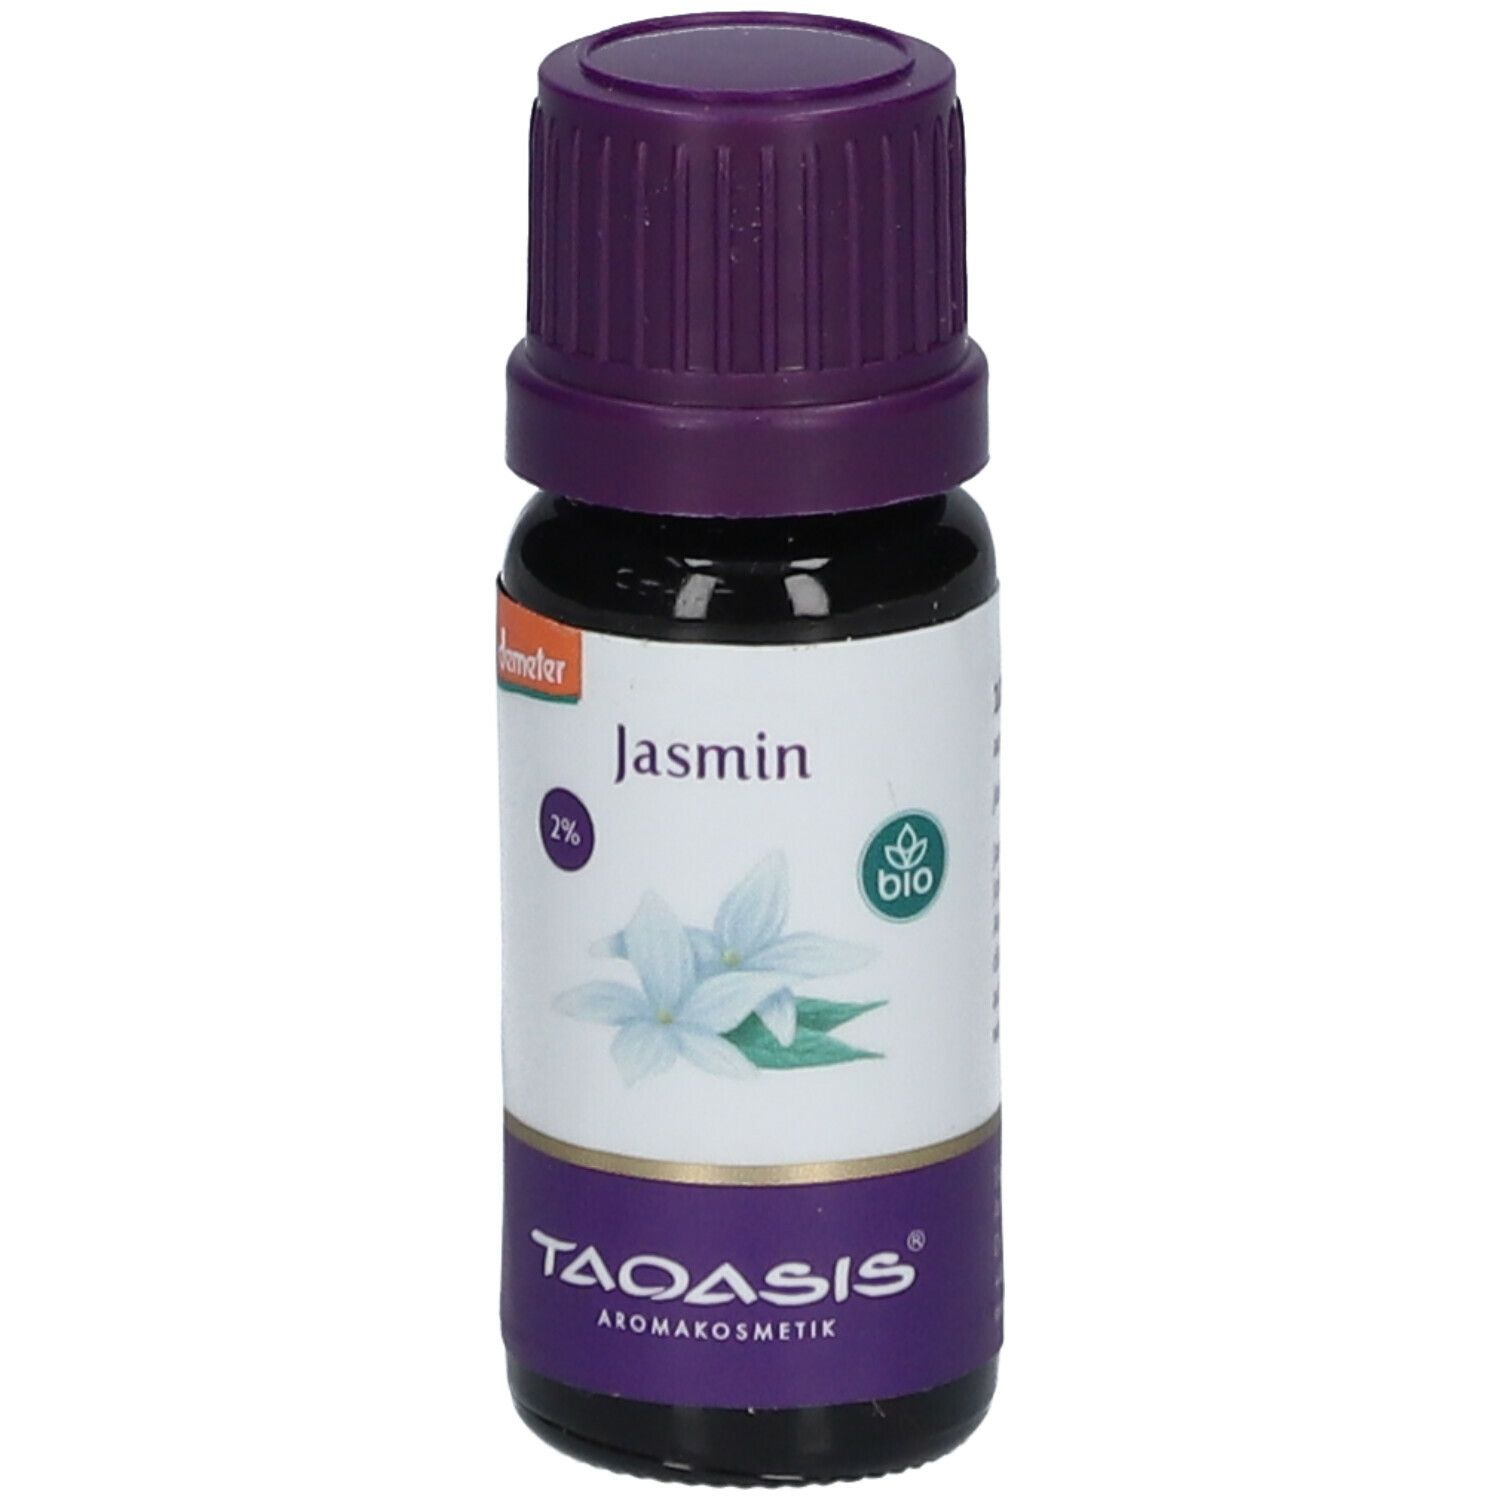 TAOASIS® Jasmin 2% Öl